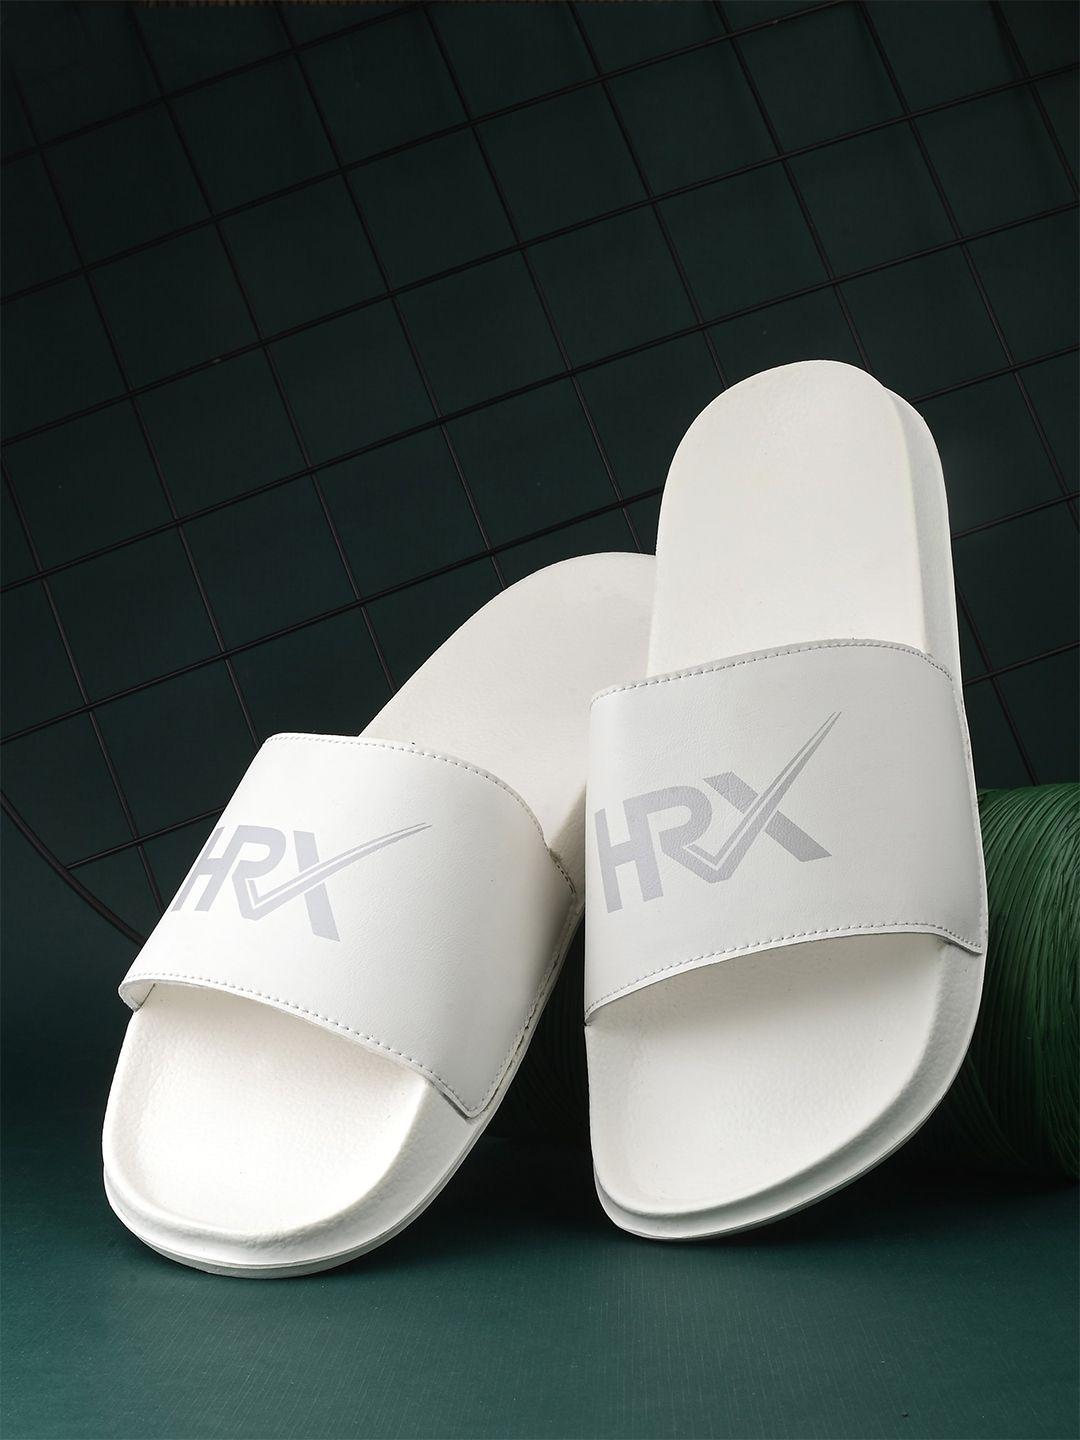 hrx-by-hrithik-roshan-men-white-&-grey-brand-logo-printed-sliders